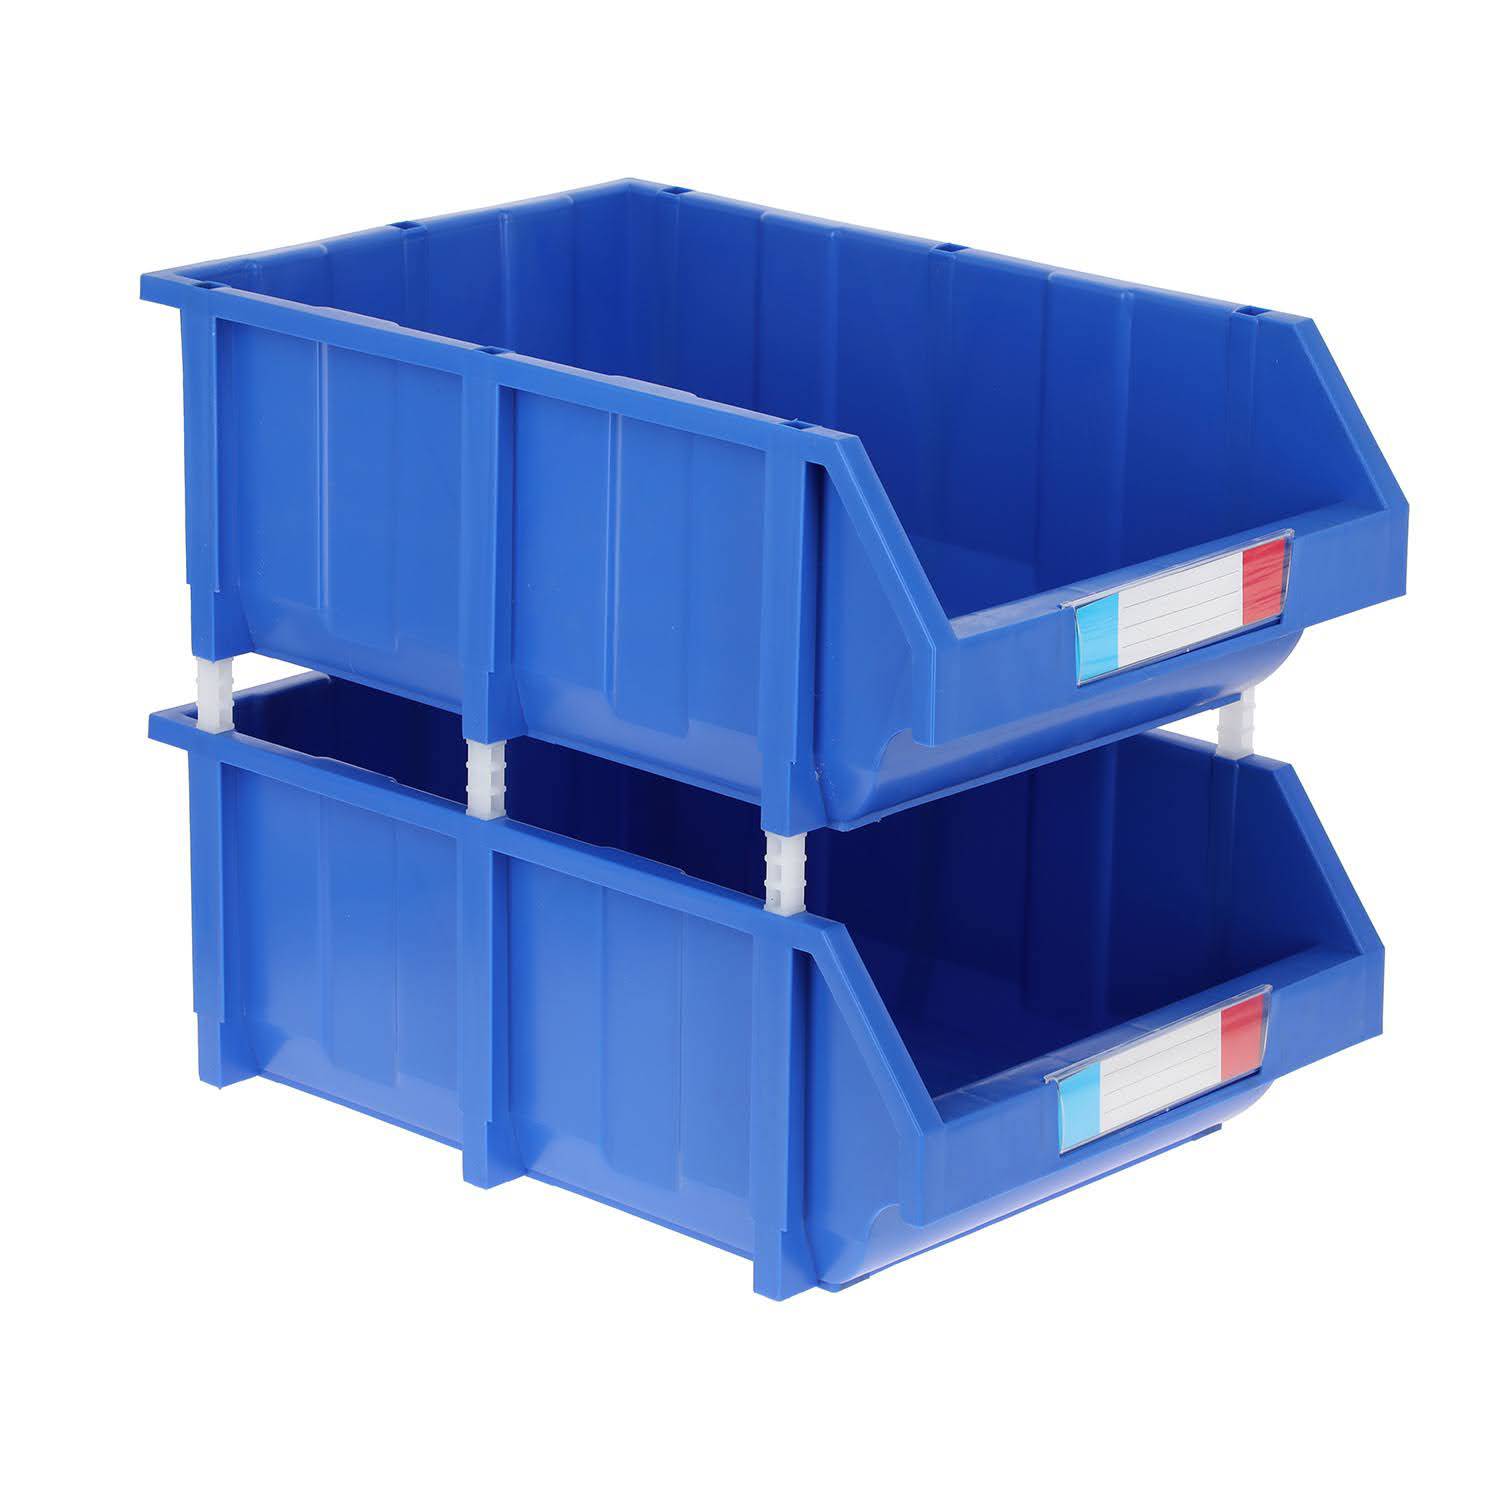  Paquete de 2 cajas organizadoras de plástico